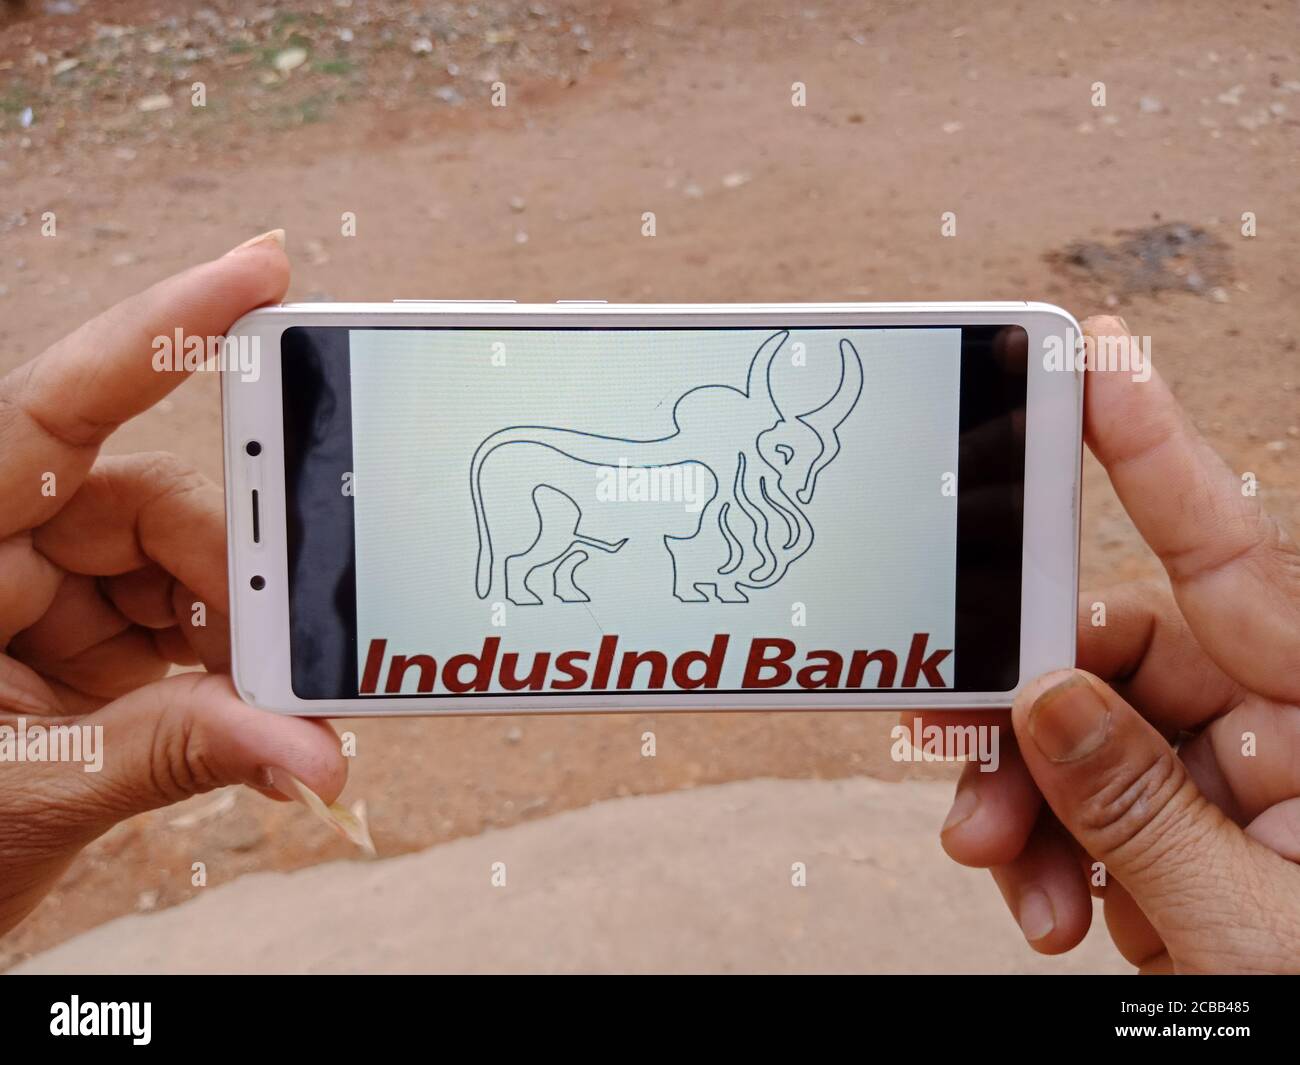 DISTRETTO KATNI, INDIA - 02 GIUGNO 2020: Una donna indiana che tiene uno smartphone con visualizzazione del logo della Banca IndusInd sullo schermo, moderno educazione bancaria conc Foto Stock